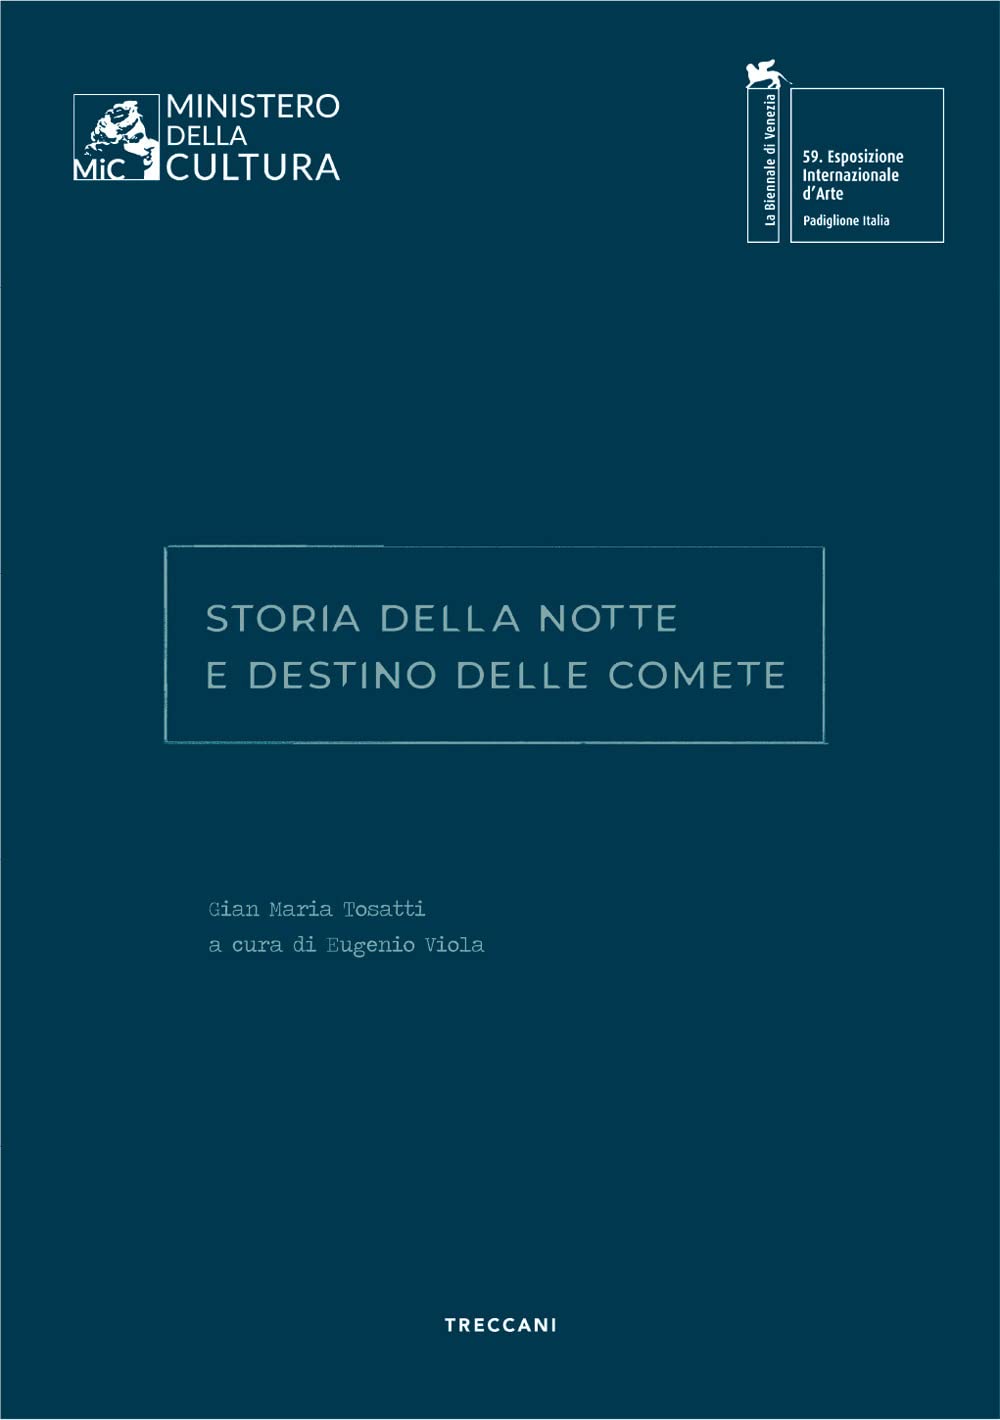 Eugenio Viola (a cura di) – Storia della Notte e Destino delle Comete (Treccani, Roma 2022)